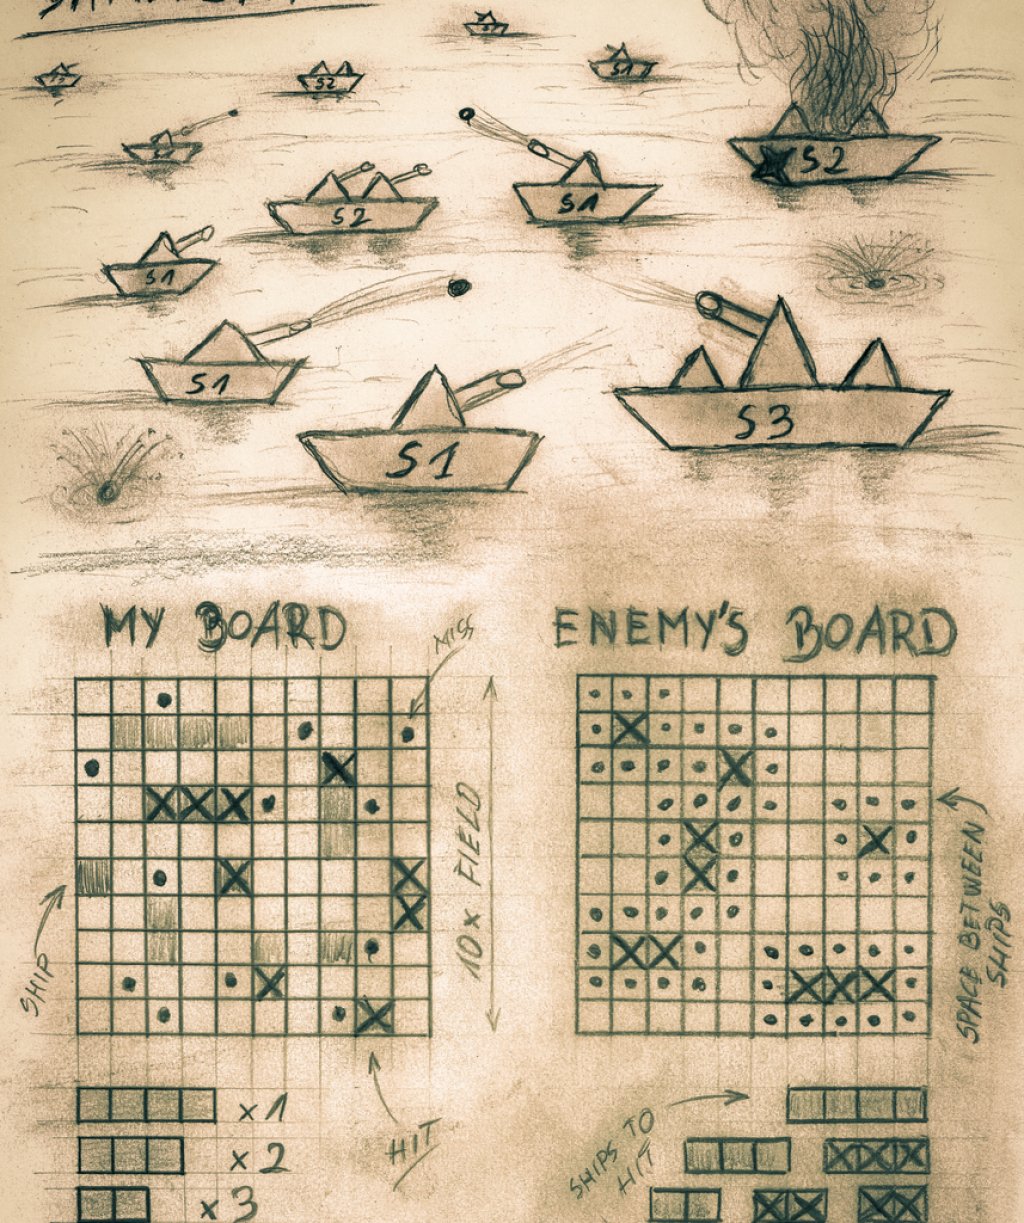 Кораби

Всъщност, играта може да се намери и като "боен кораб", и като "кораби и лодки" и др. Но идеята е една - да потопите кораба на вашия противник. Съответно, играта е за двама души.
За да ви улесним в търсенето как се играеше, припомняме - нужни са ви два листа и нещо за писане. Начертавате 10 реда и 10 колони, обонзачавате ги с букви и цифри до 10, рисувате корабите и лодките, след което започвате да "стреляте" по тези на противника, като използвате съответните координати - например А7. Има нещо страхотно в това да проявиш фантазия в играта, а не да чакаш Playstation-a или Xbox-a да "фантазира" вместо теб.